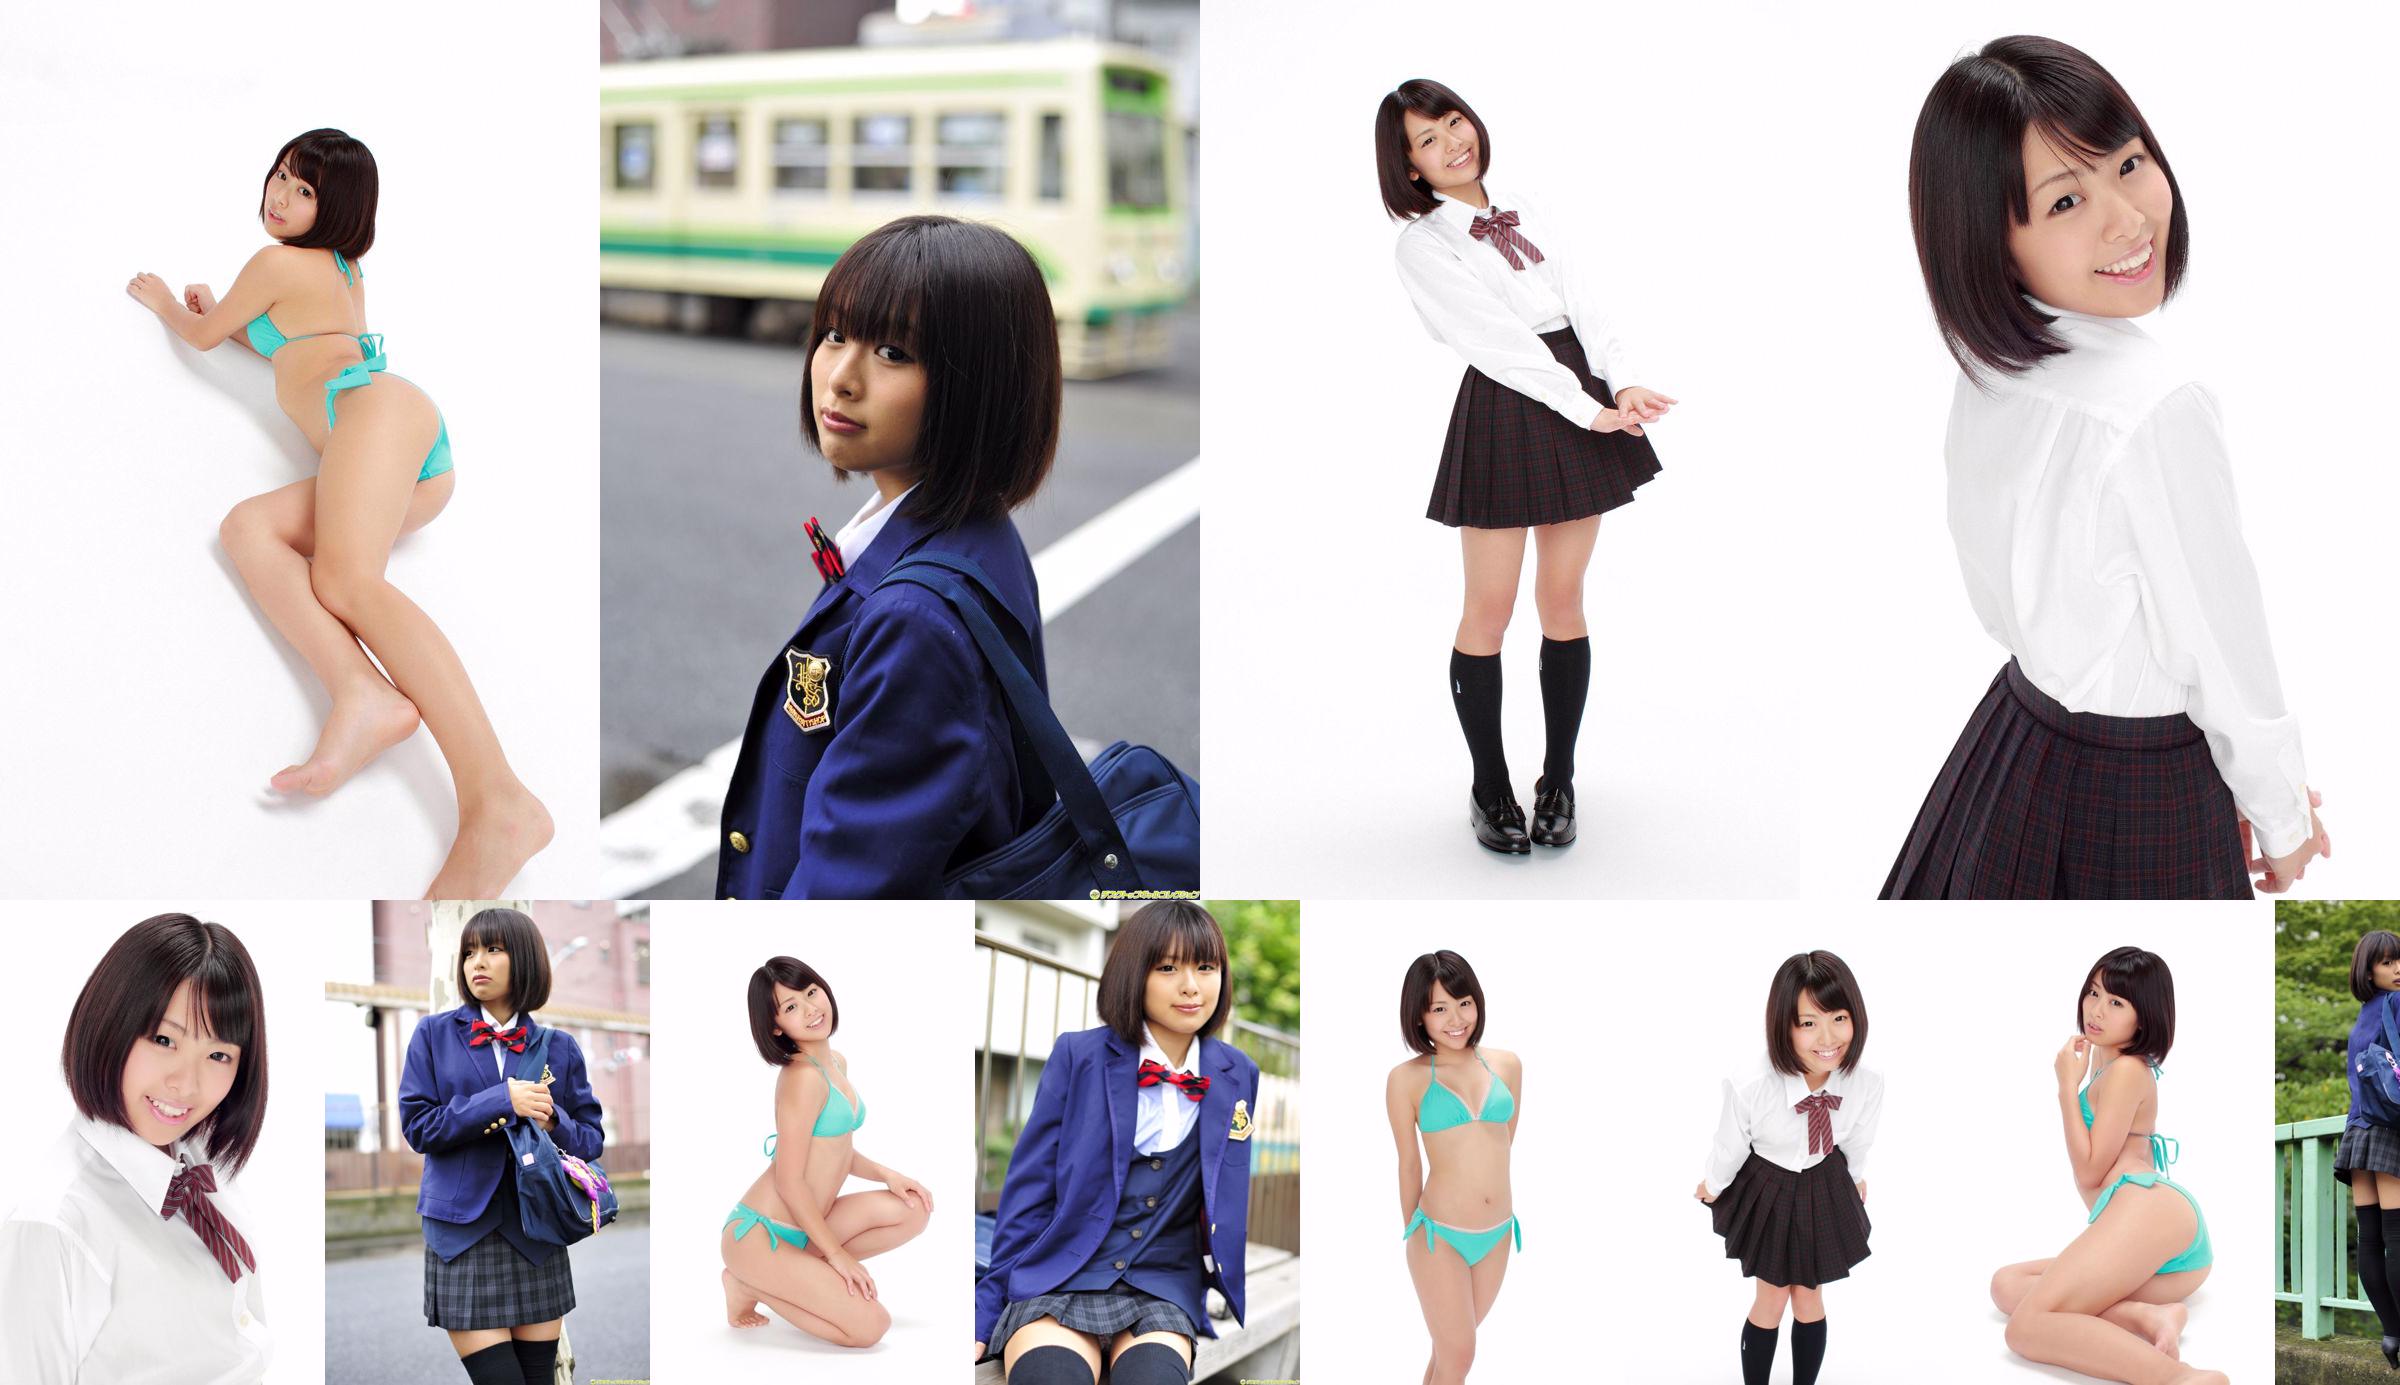 [DGC] NO.992 Ran Sakai Ran Sakai Uniform Beautiful Girl Heaven No.5c48b6 Страница 1